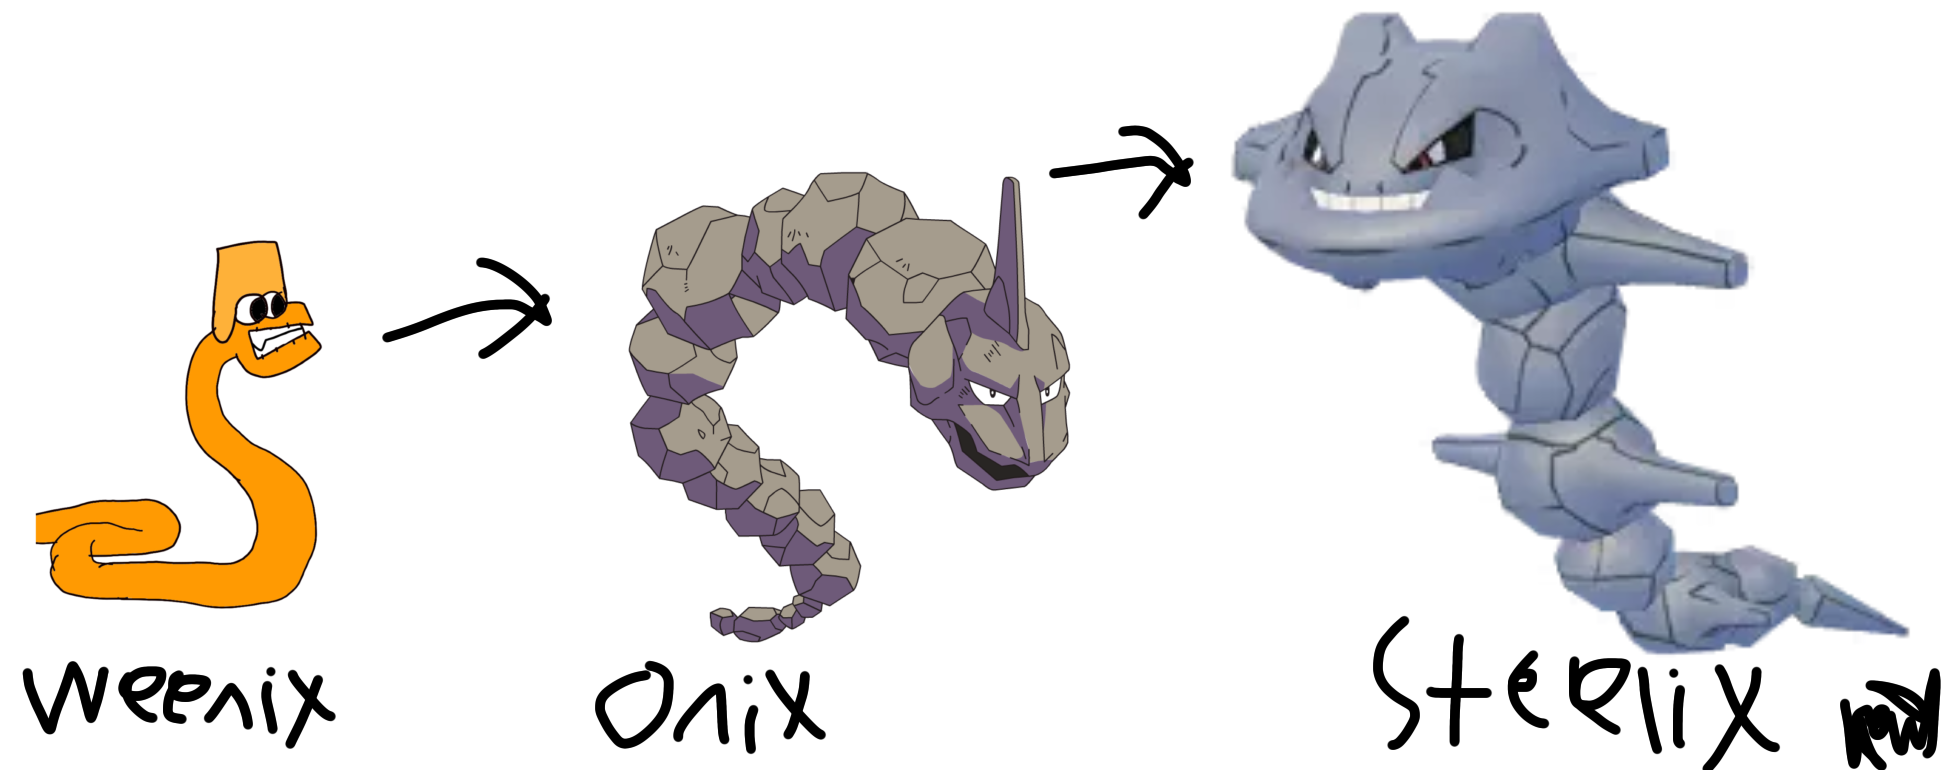 Onix Evolution  Onix pokemon, Pokemon, Evolution